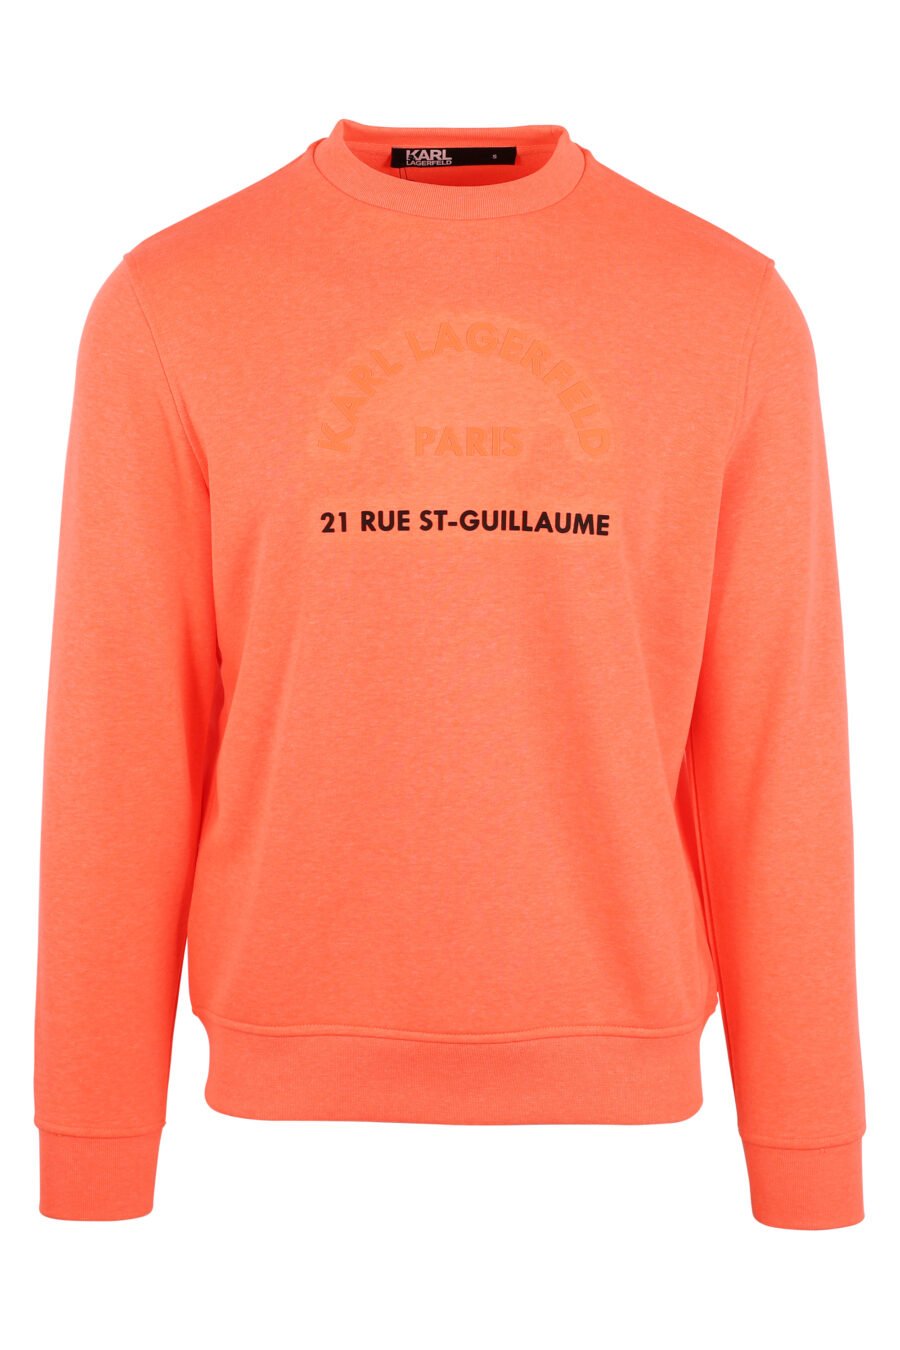 Sweat orange avec maxilogo "rue st guillaume" noir - IMG 9459